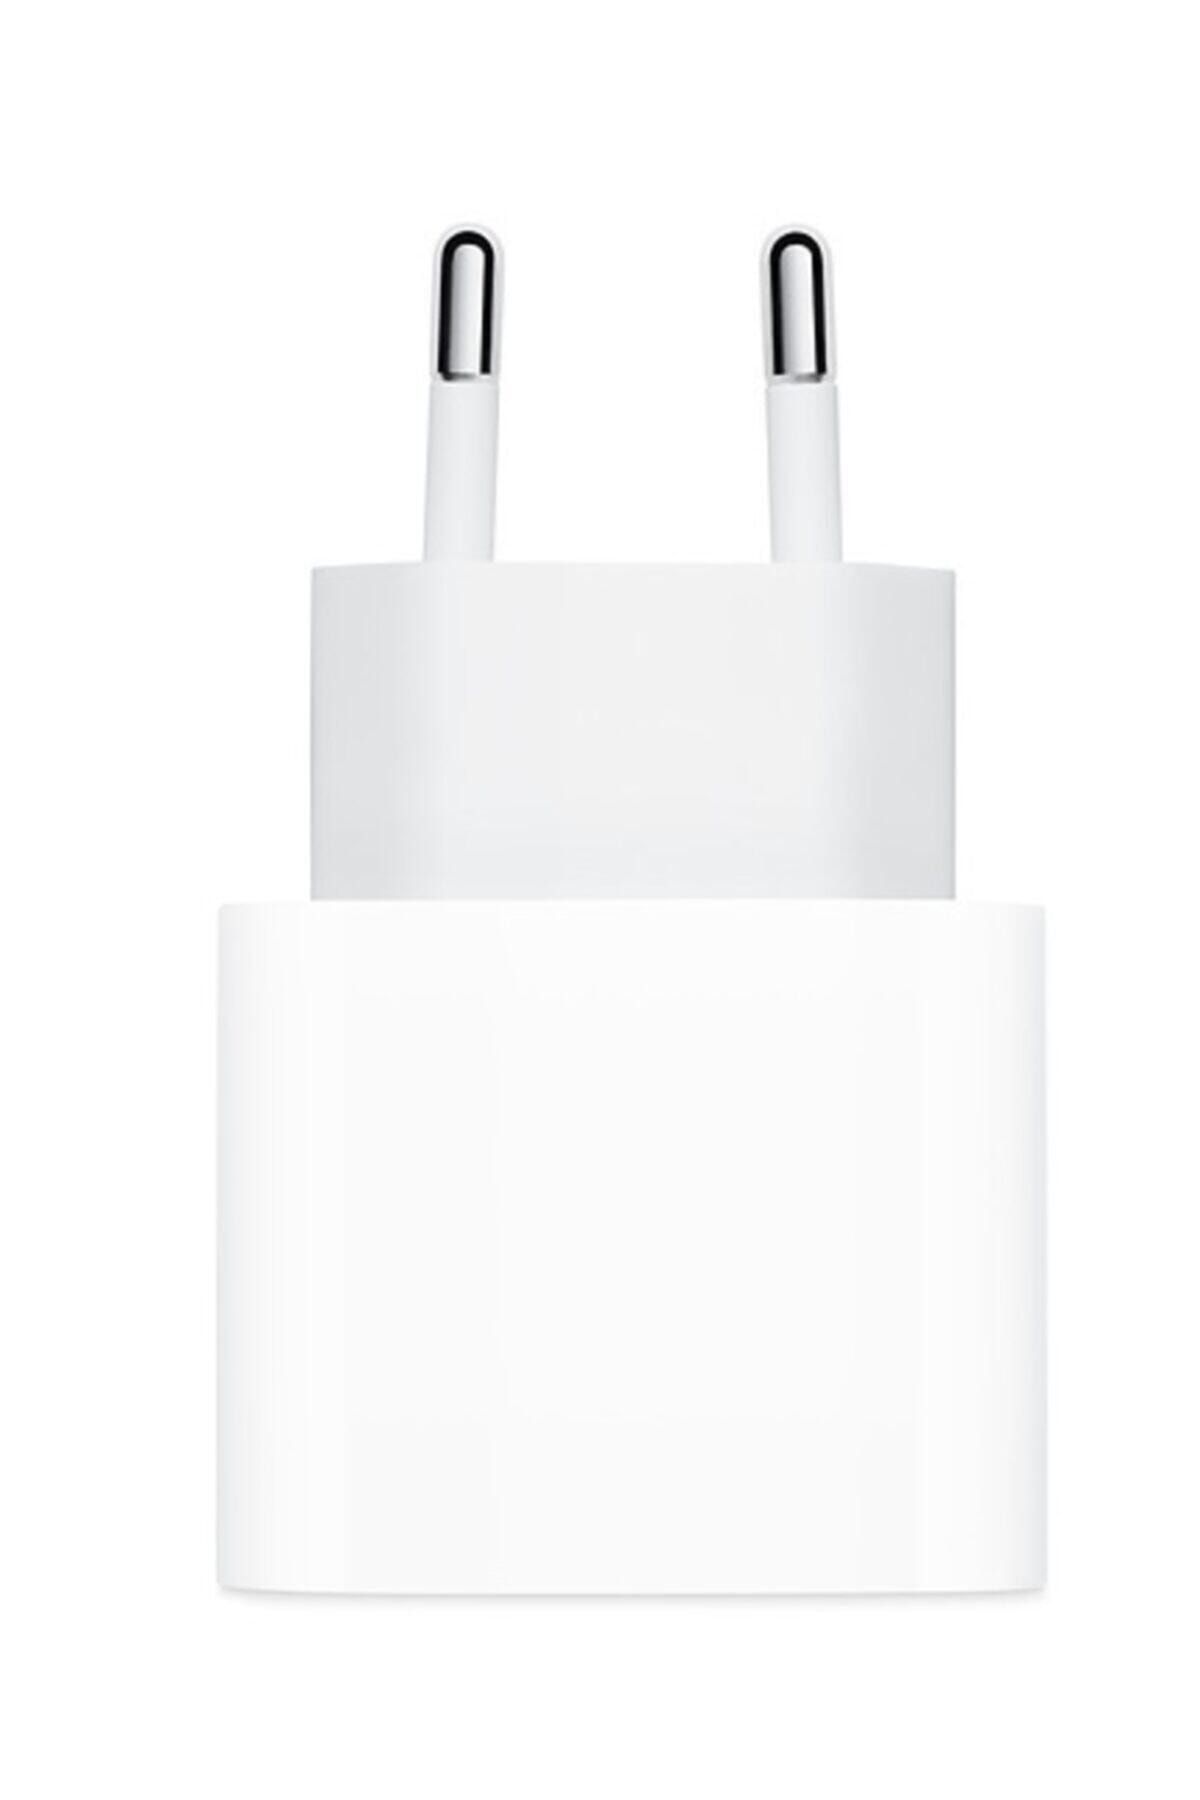 Apple 18 W Usb-c Güç Adaptörü